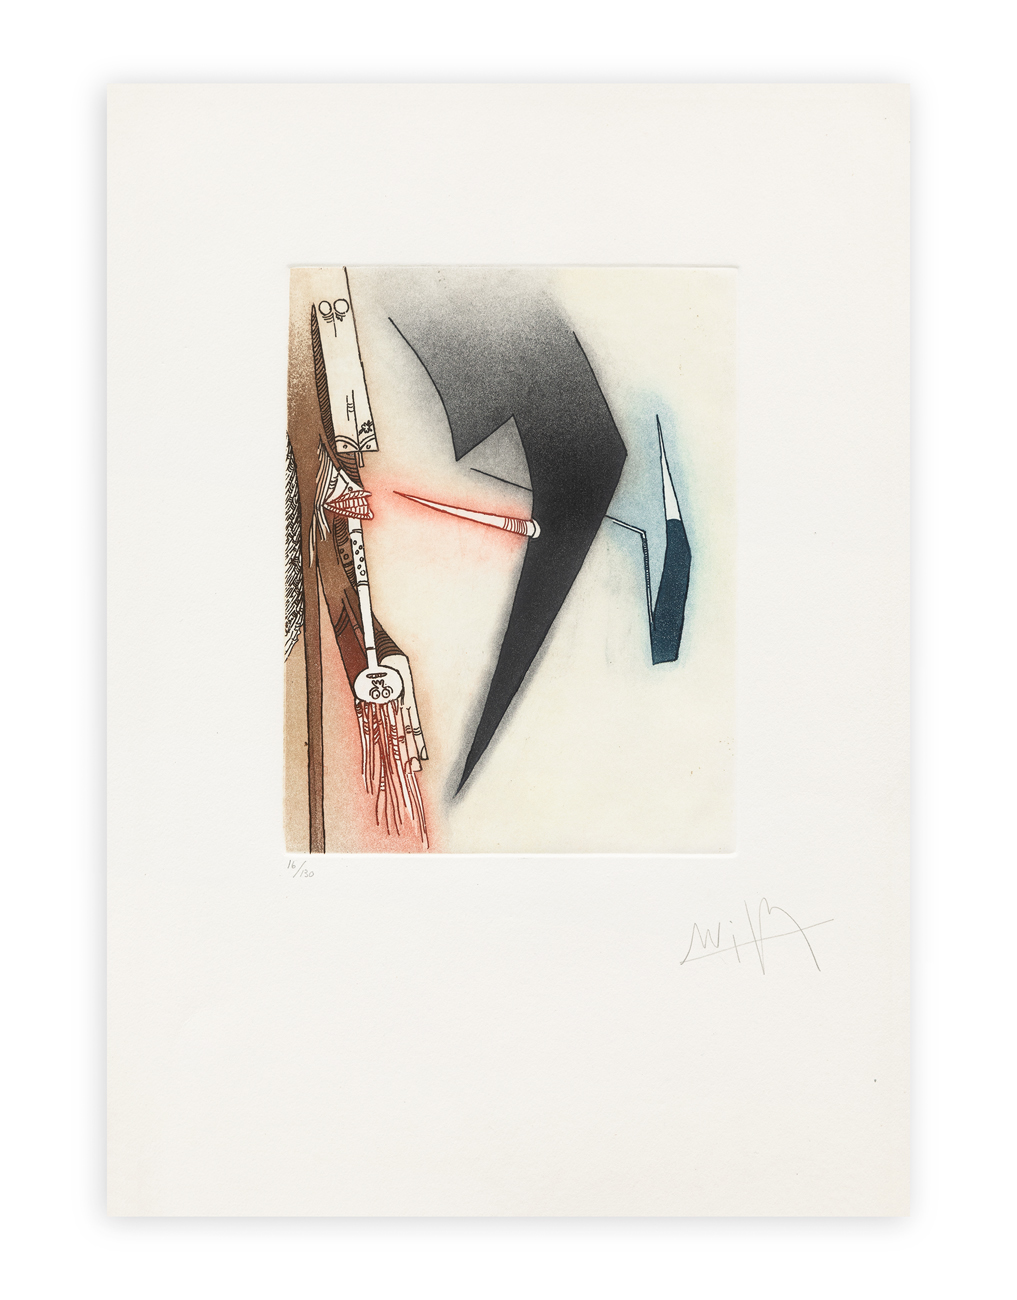 WIFREDO LAM (1902-1982) - Vingtème parallèle, Plate III, 1966